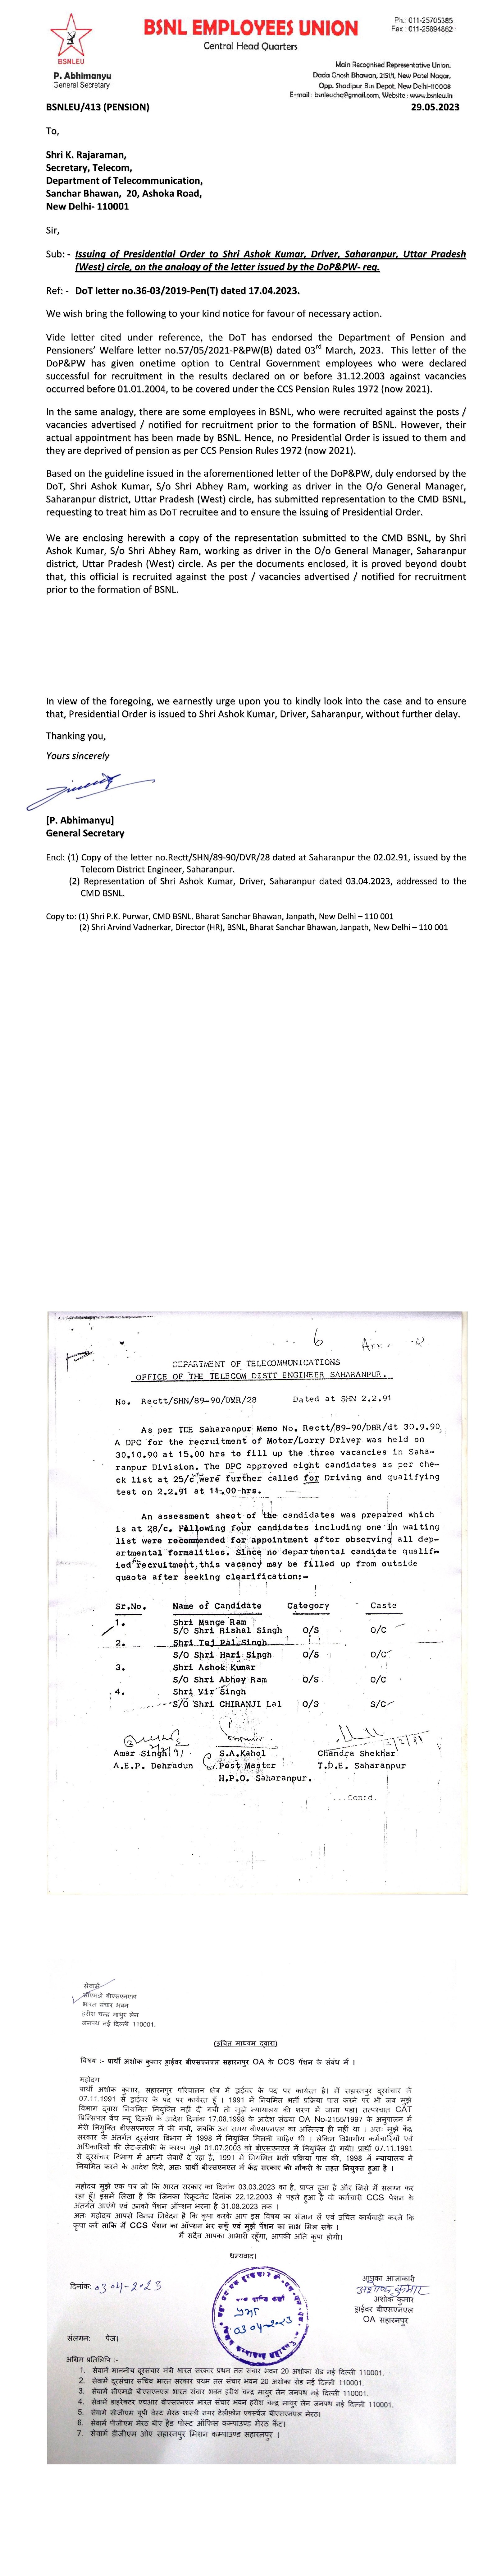 *बीएसएनएलच्या स्थापनेपूर्वी, भरतीसाठी अधिसूचित केलेल्या पदावर नियुक्त केलेल्या कर्मचाऱ्यांना अध्यक्षीय आदेश जारी करणे - BSNLEU ने सचिव, दूरसंचार यांना पत्र लिहिते.* Image 